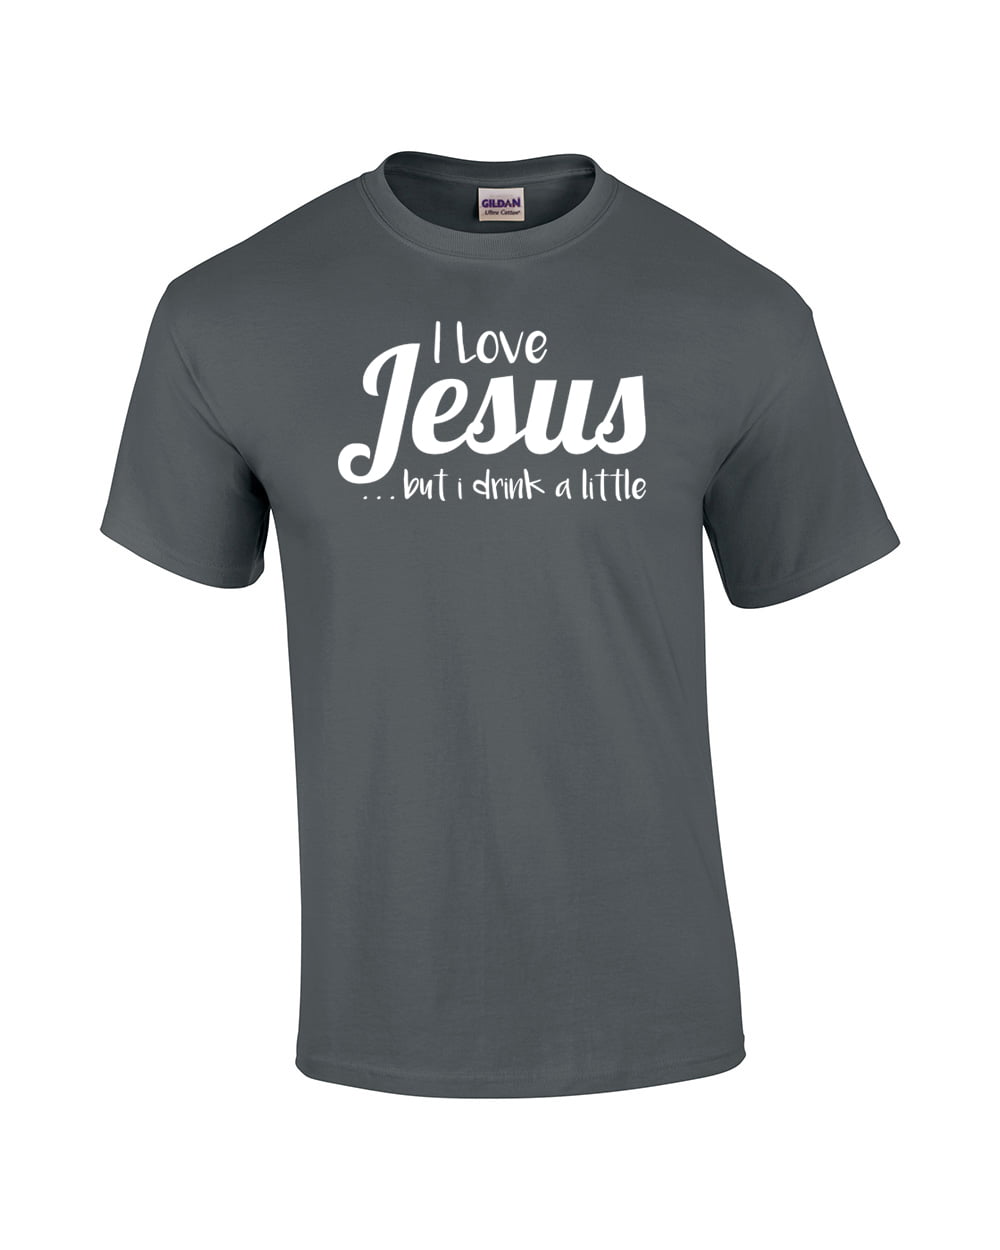 This GirlGuy Loves Jesus Unisex T-Shirt